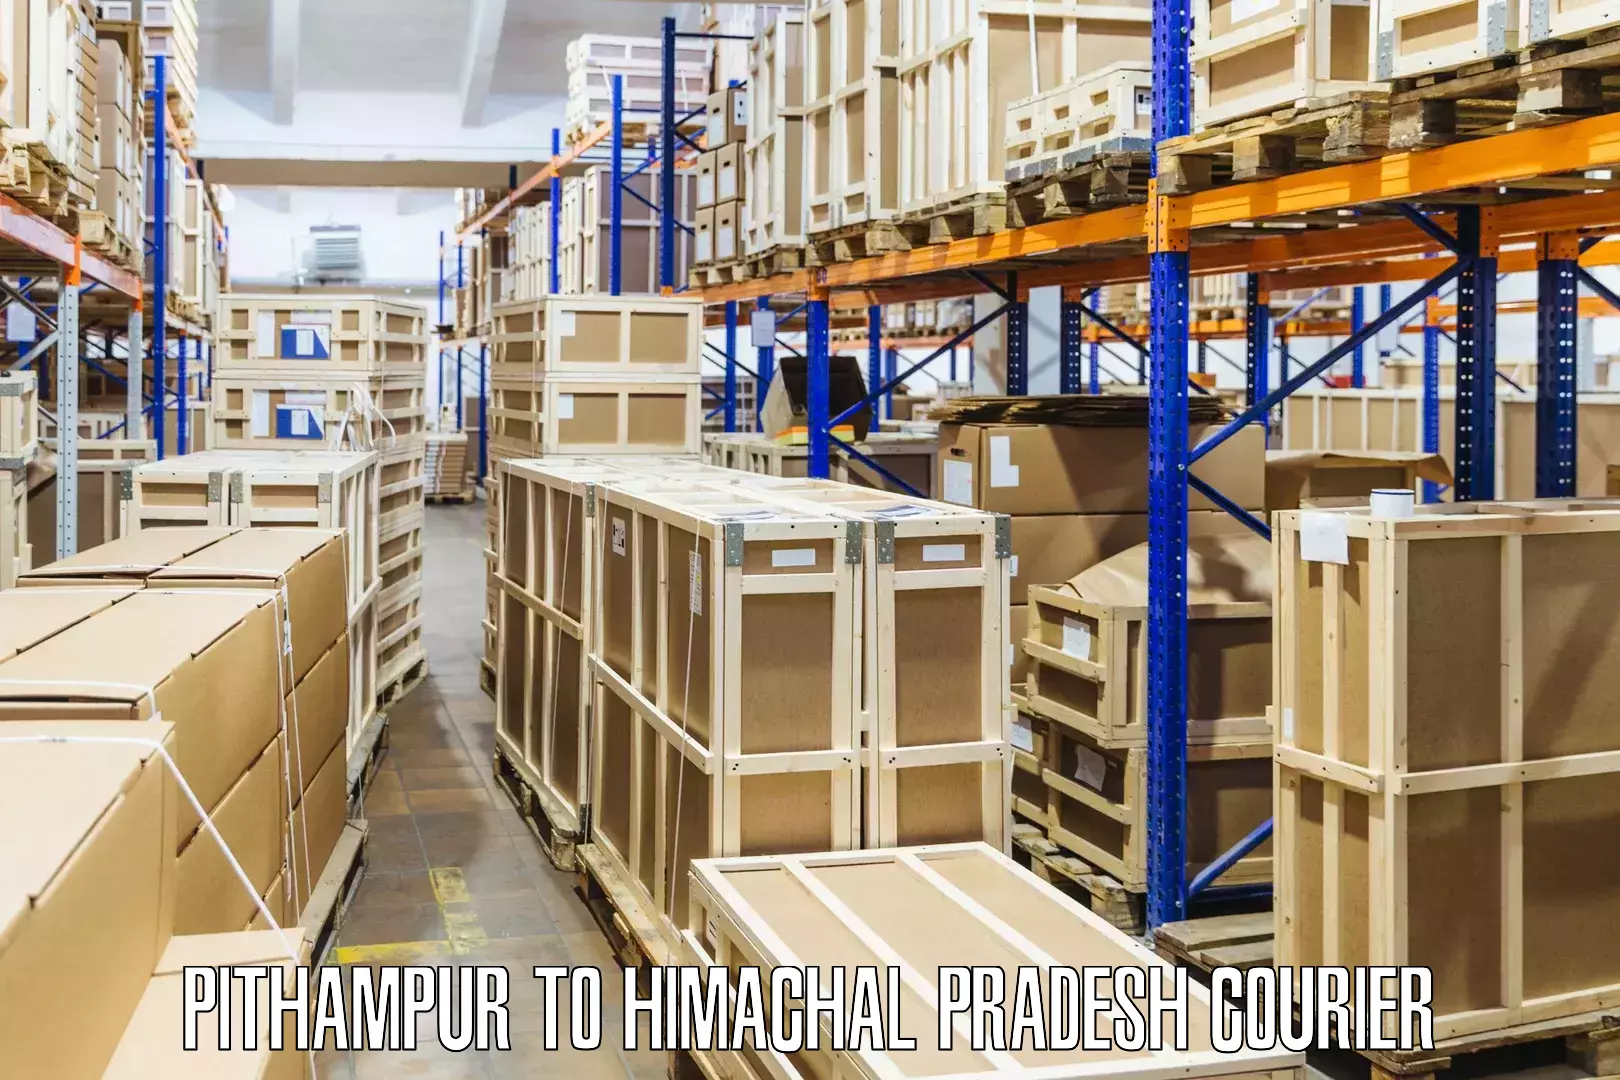 Fragile item shipping Pithampur to Himachal Pradesh